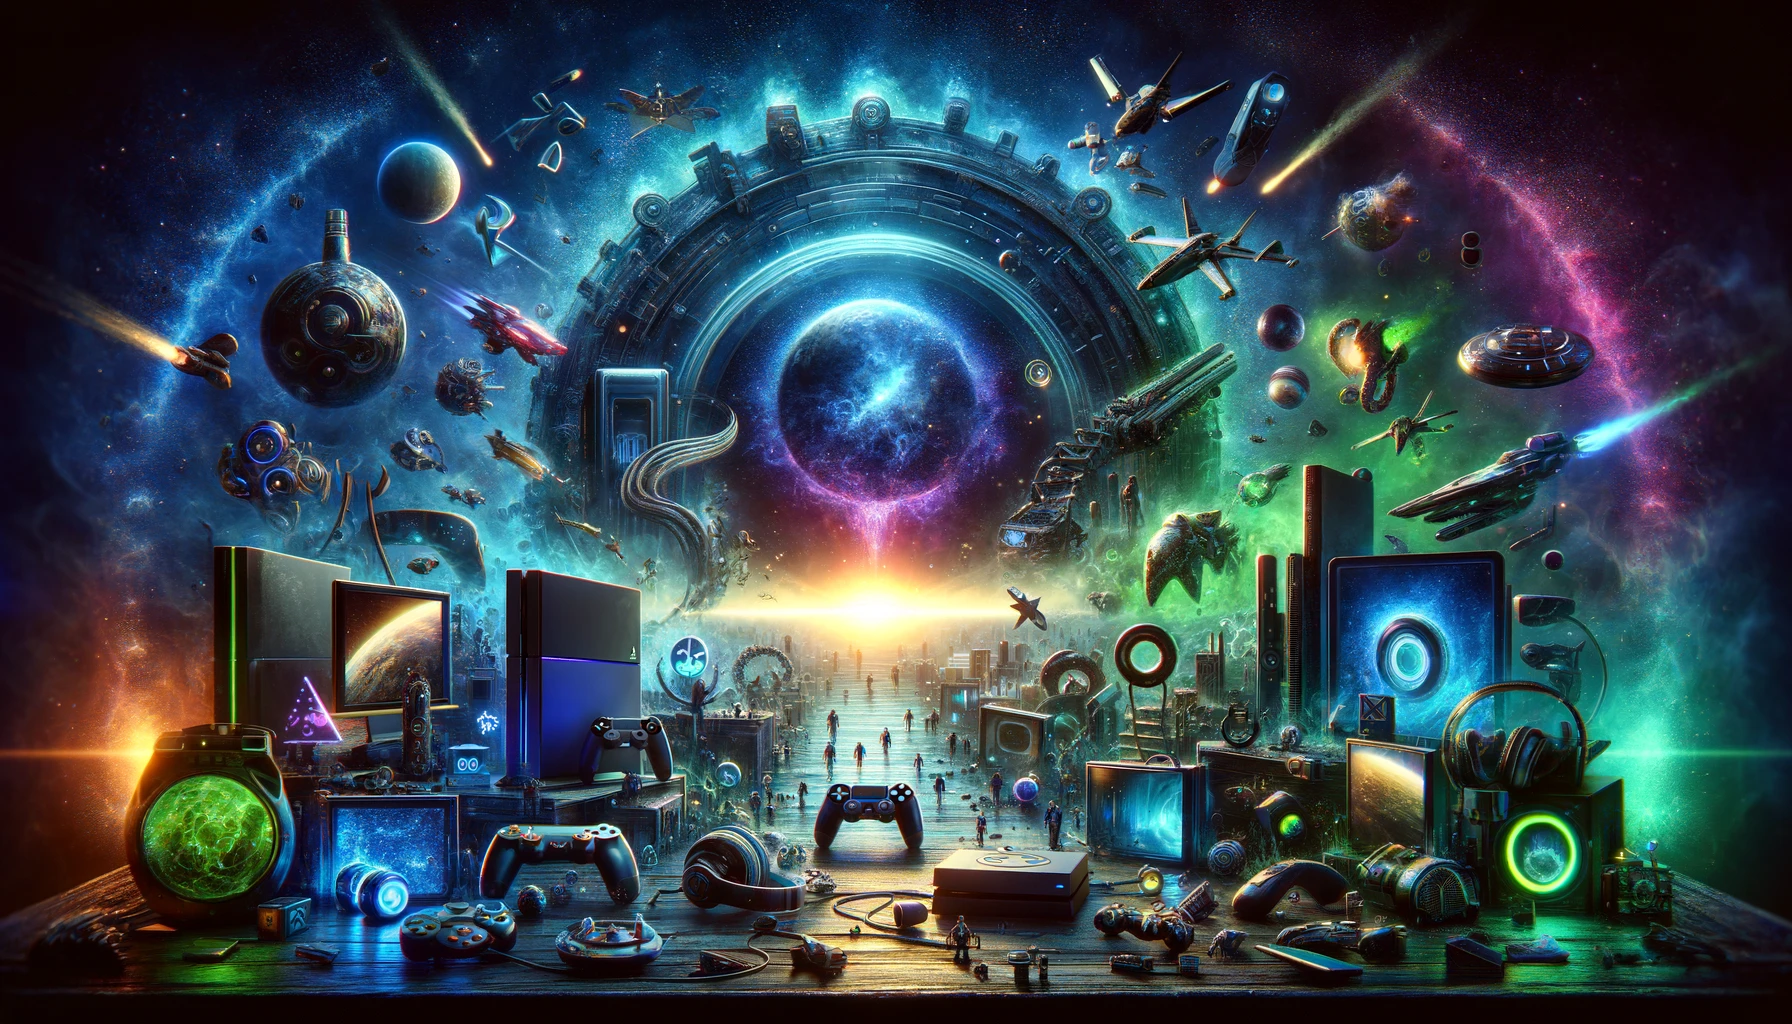 Banner dinámico con tecnología de videojuegos avanzada y símbolos icónicos en neon sobre fondo oscuro, evocando un universo de gaming inmersivo.